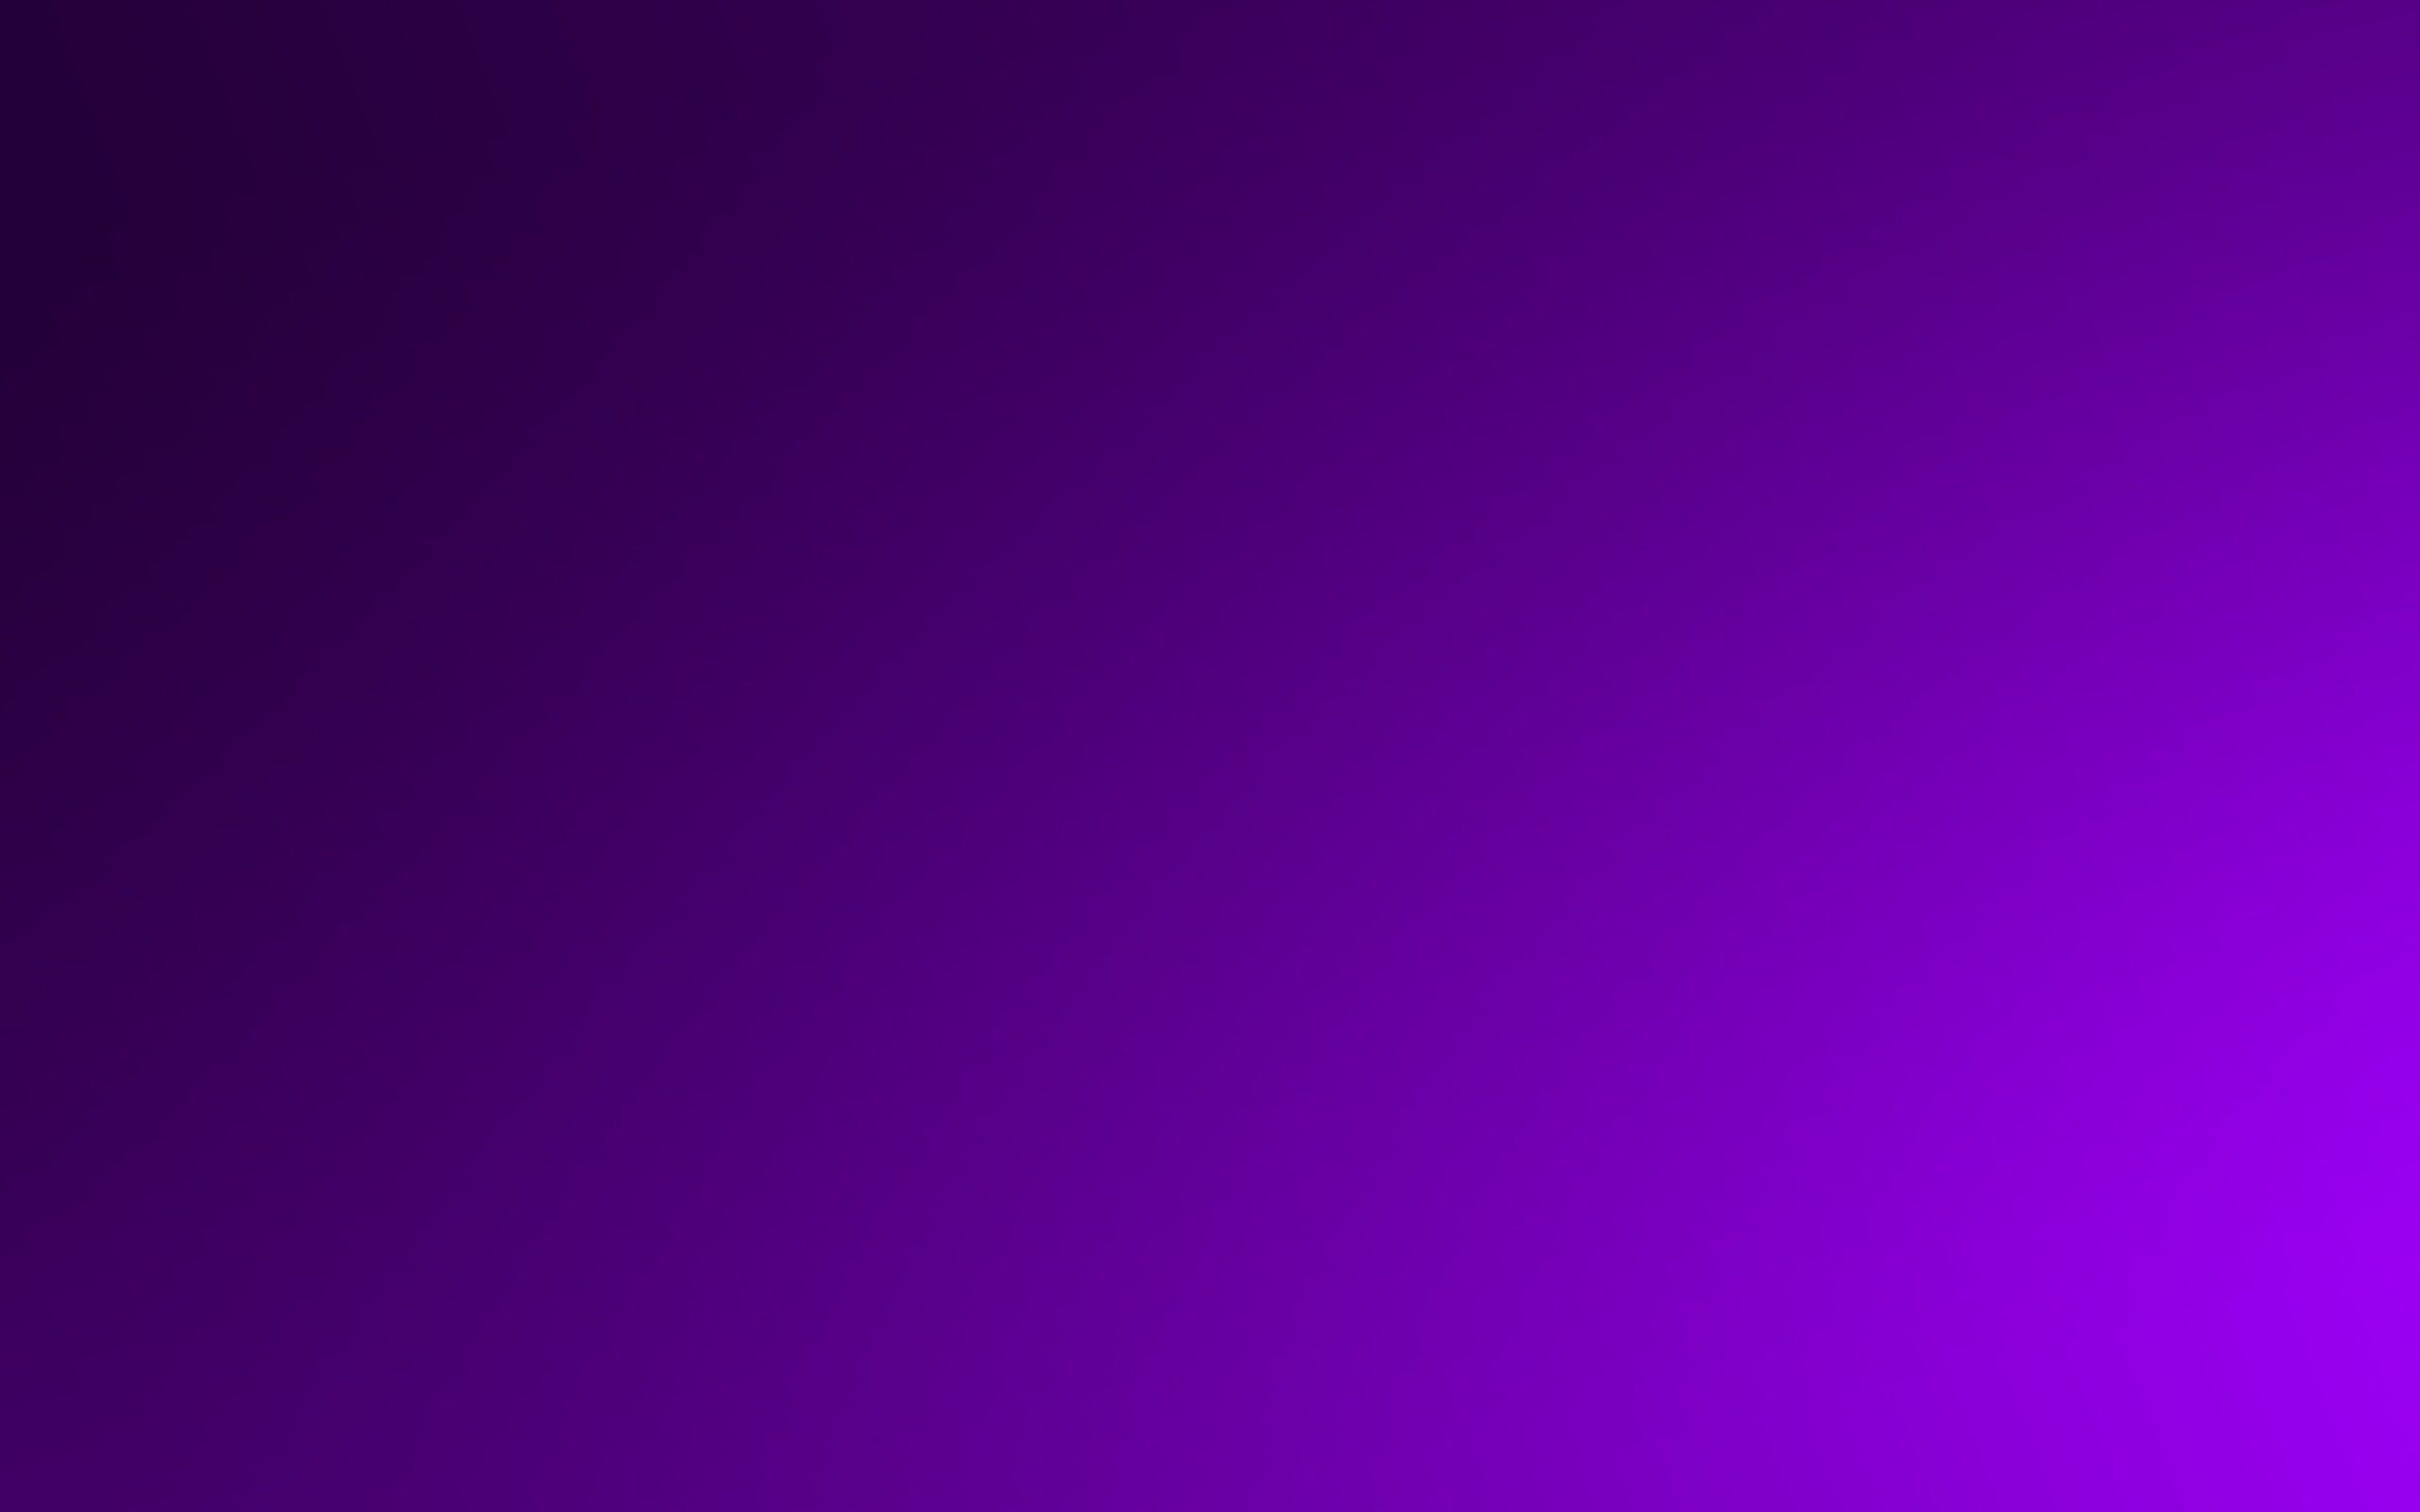 Tải Ngay 999+ Background Purple Neon Siêu Đẹp, Tốc Độ Cao, Miễn Phí